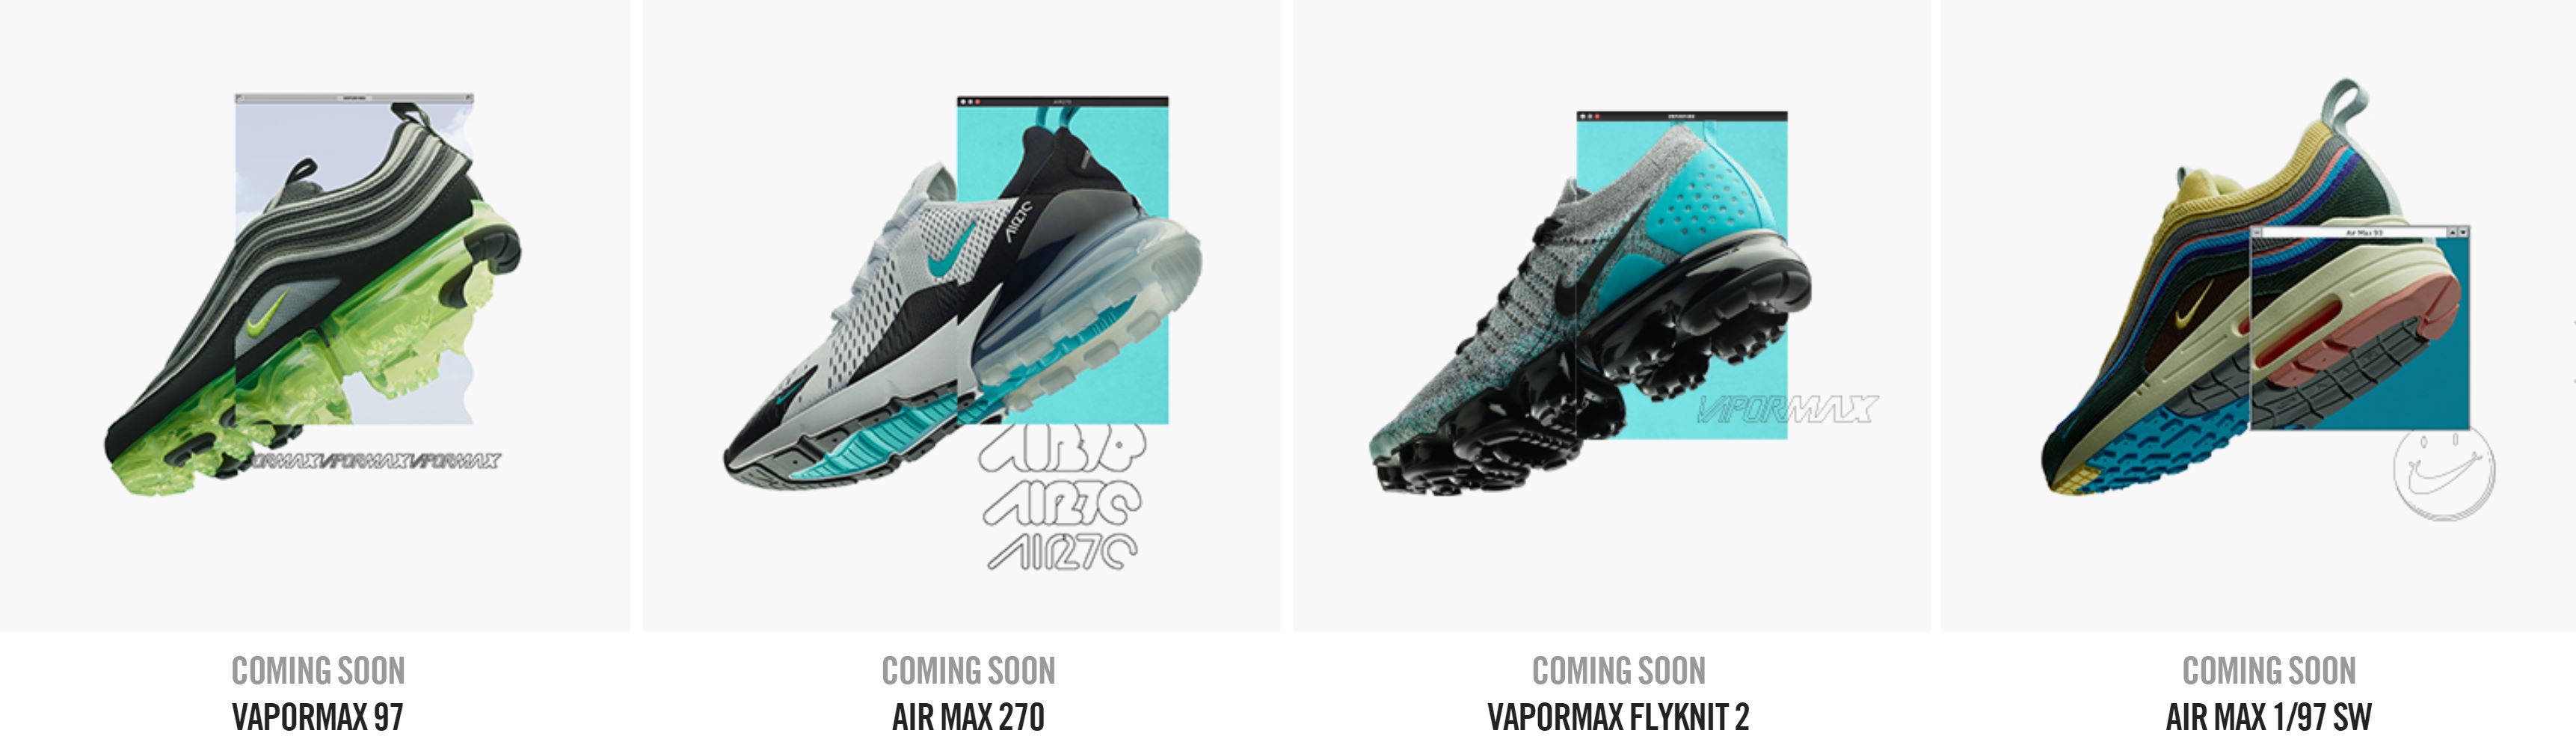 deugd Politie Tienerjaren Nike Unveils Air Max Day 2018 Releases - WearTesters